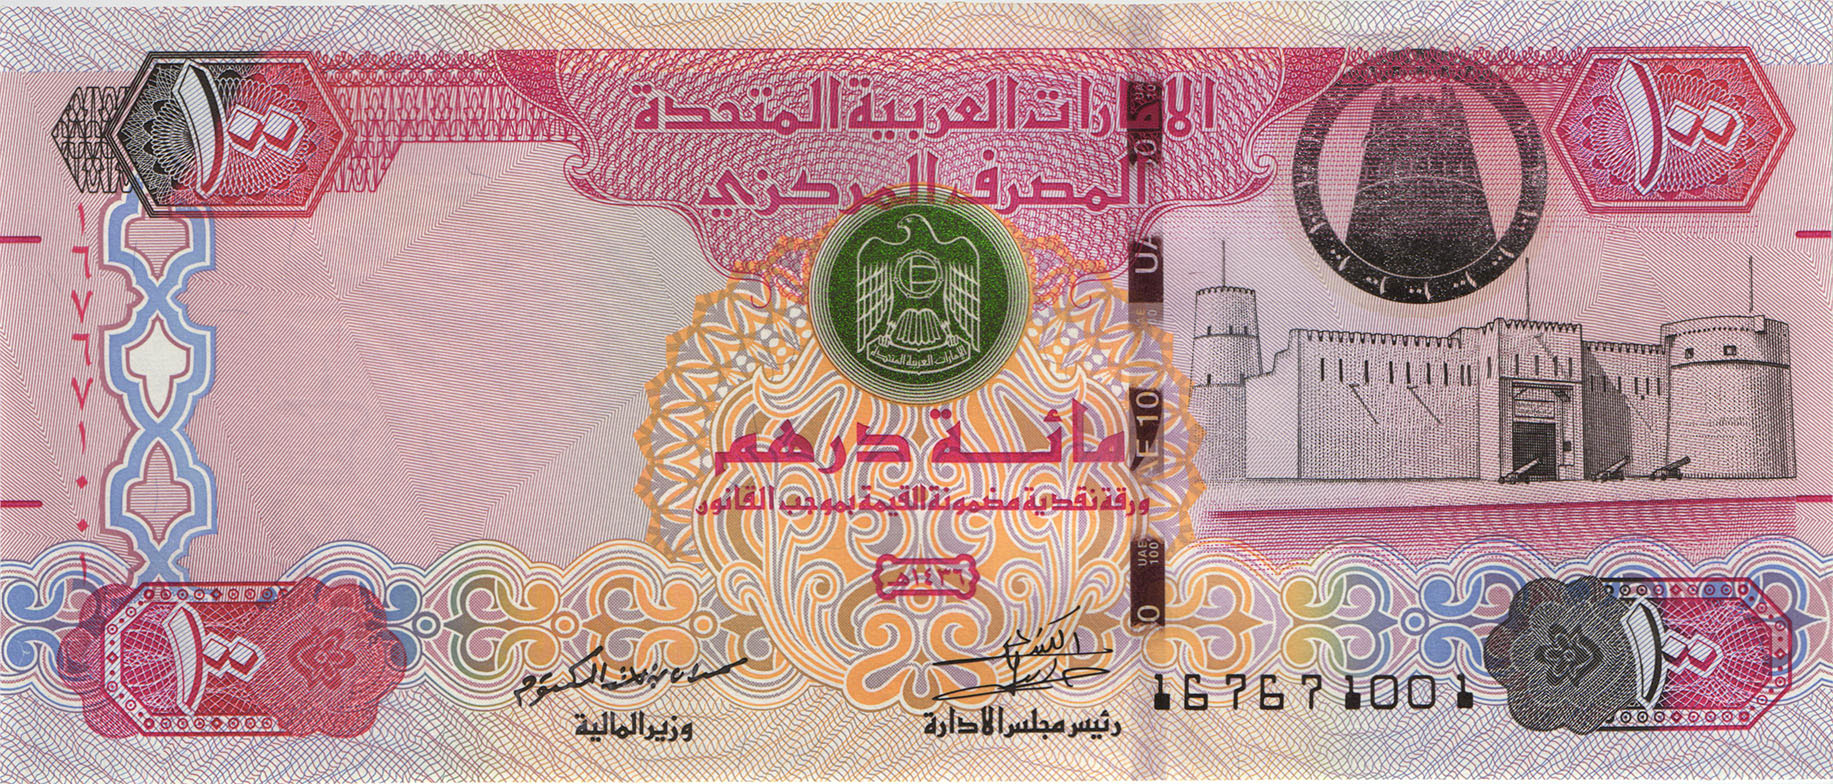 Курс евро к дирхаму в дубае сегодня. Банкноты United arab Emirates,2008, 50 dirhams. 100 Дирхам ОАЭ. Дирхам ОАЭ бонны. Монета Объединённых арабских Эмиратов 100.